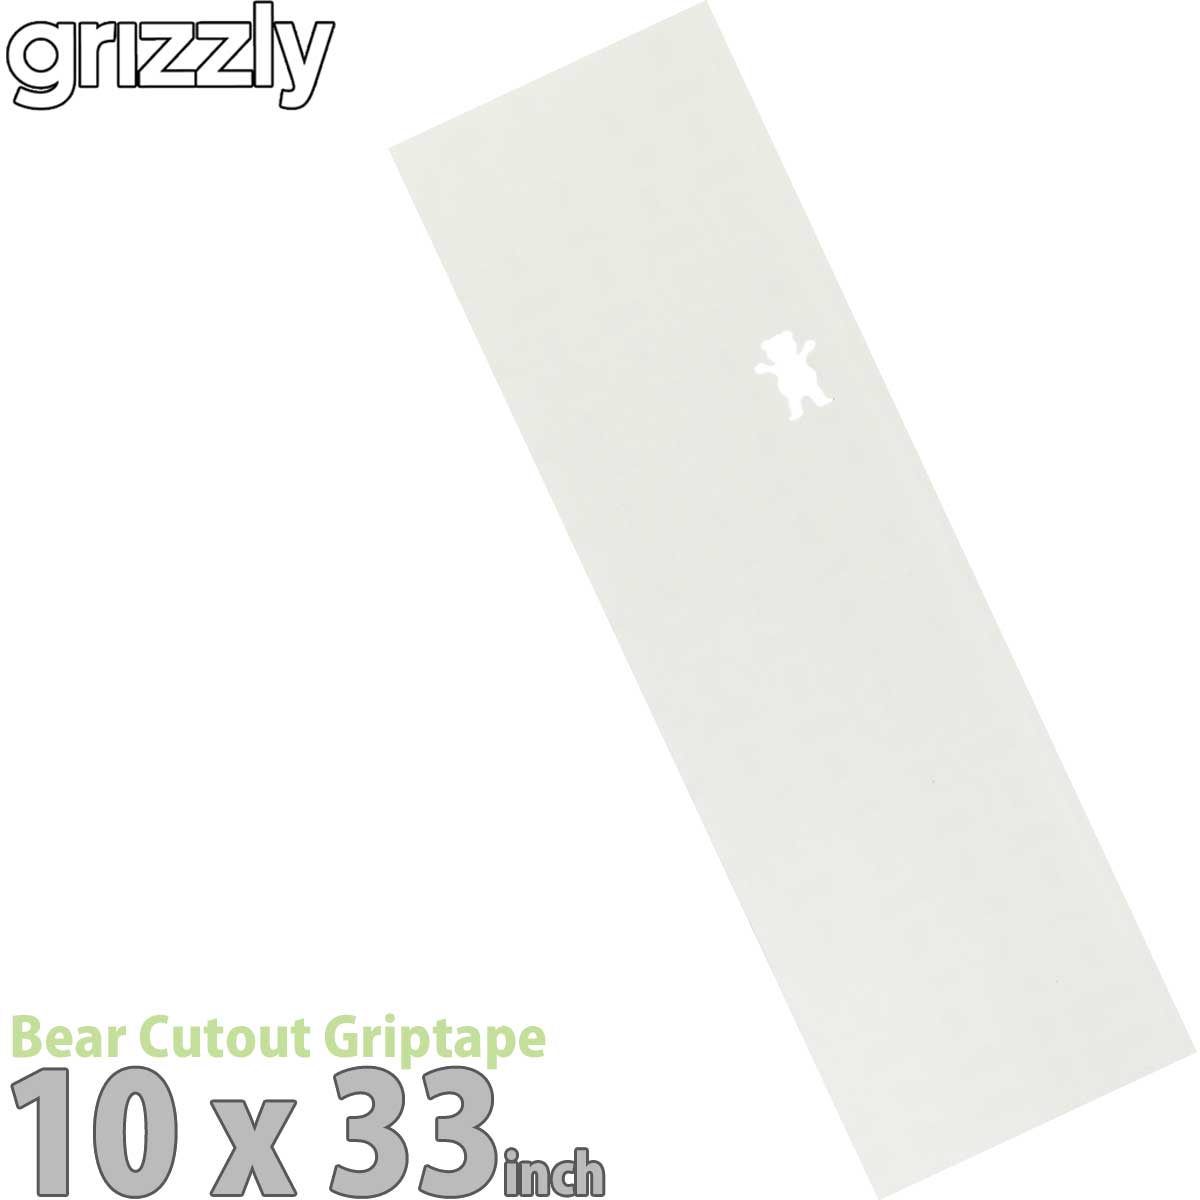 グリズリー デッキテープ ベアカットクリア 10インチ 透明 Grizzly Bear Cutout Griptape Regular 10inch レギュラー 右クマ クリアホワイト グリップテープ スケボー スケートボード パーツ ザラザラ 滑り止め 国内正規品画像